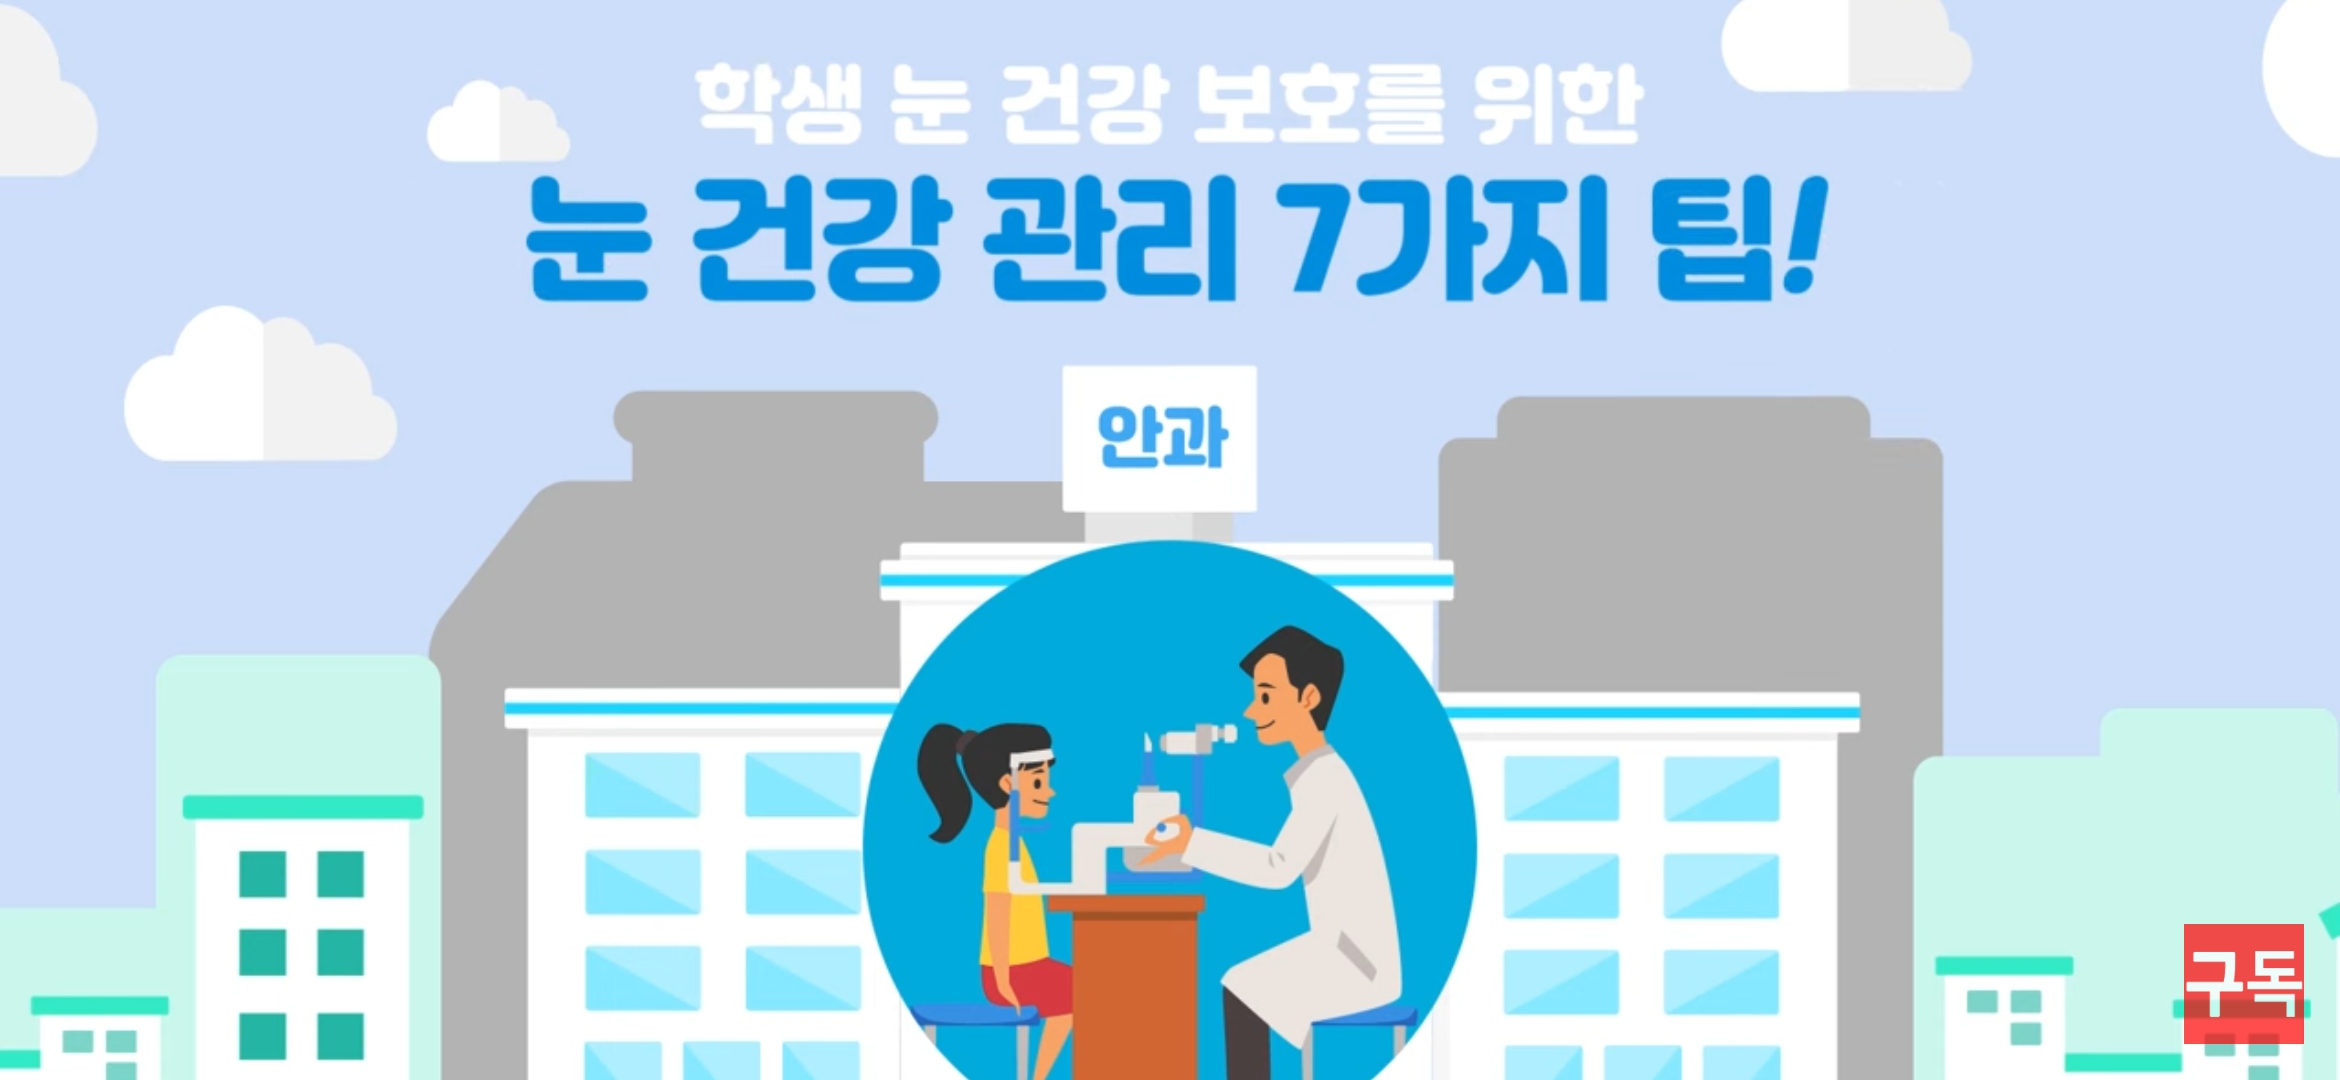 인천시교육청 학생 눈 건강을 위한 교육영상